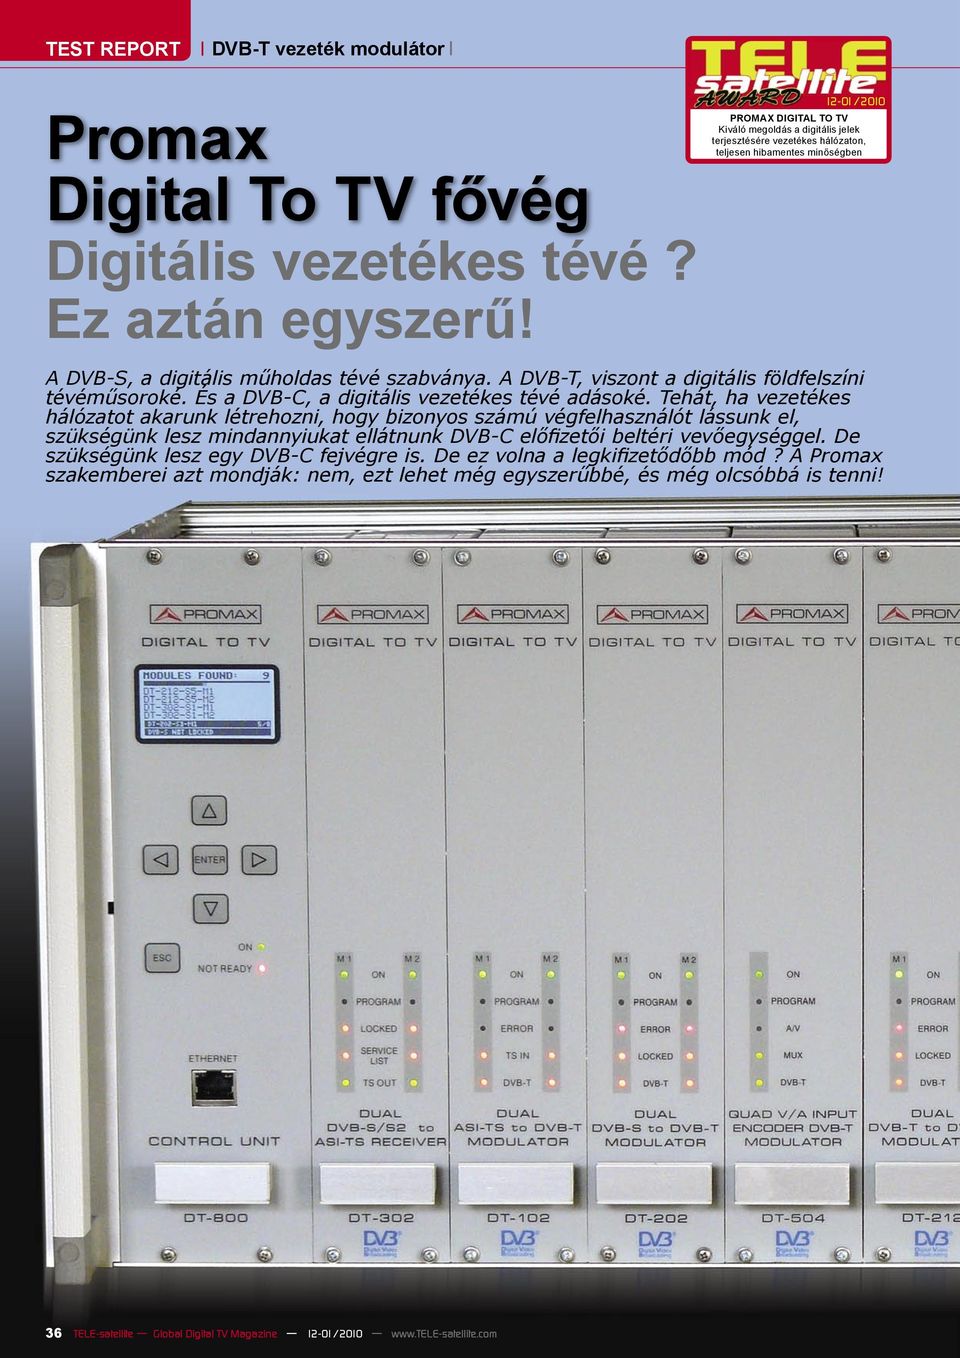 A DVB-T, viszont a digitális földfelszíni tévéműsoroké. És a DVB-C, a digitális vezetékes tévé adásoké.